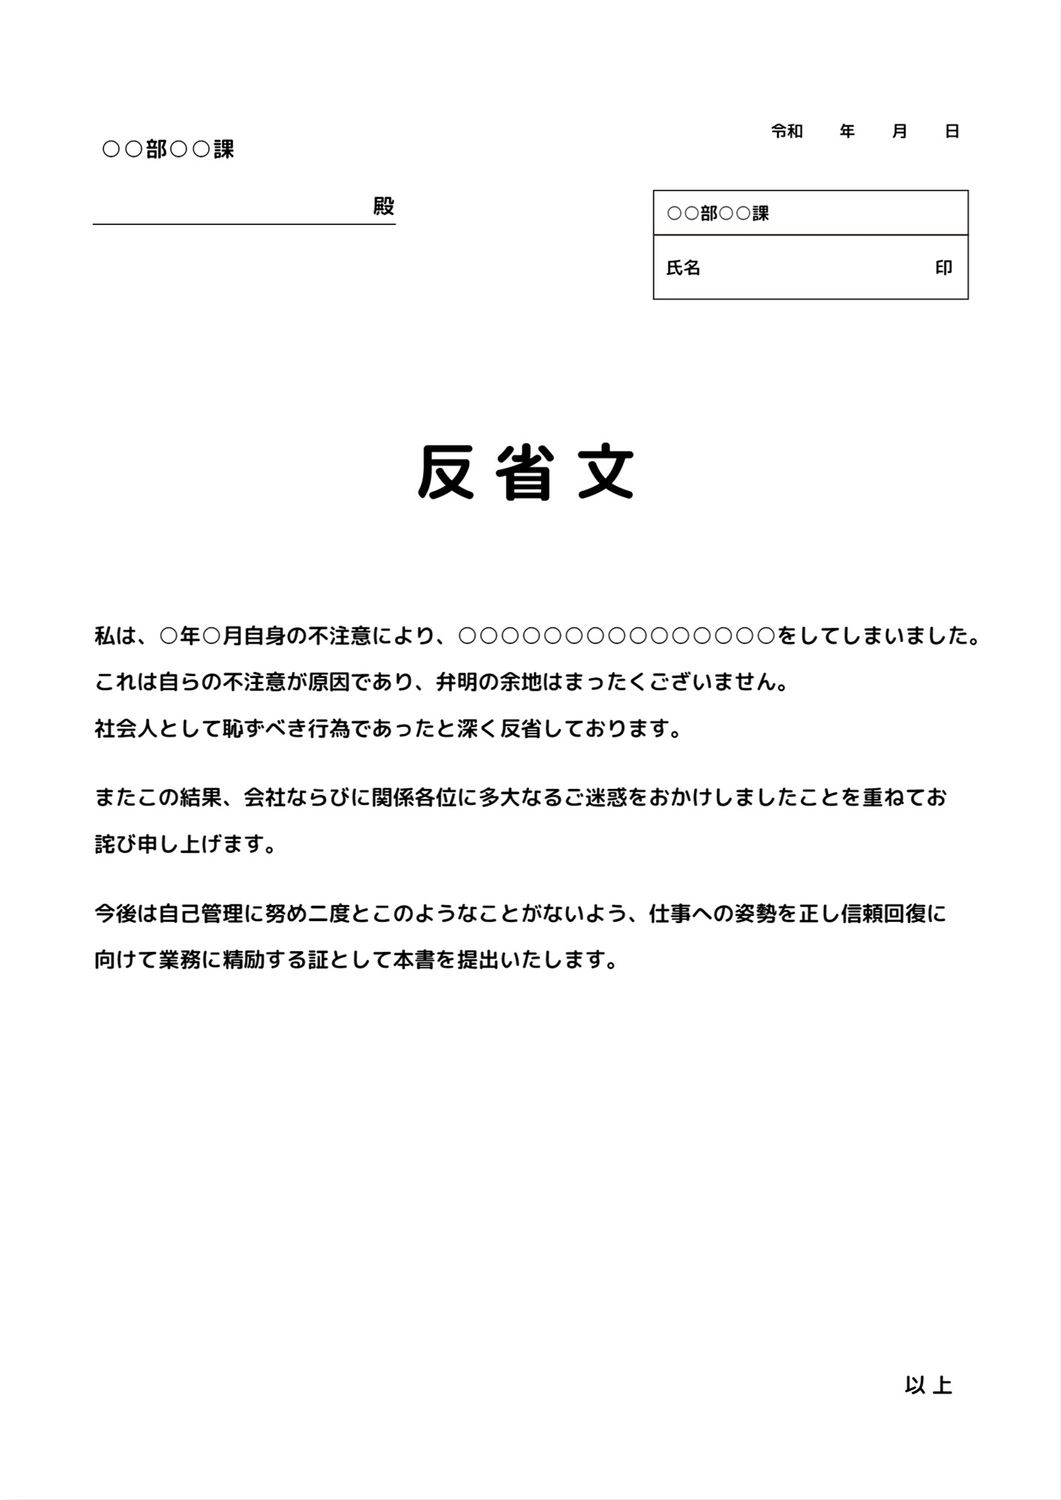 反省分テンプレート, business, government office, Apology letter, A4 template